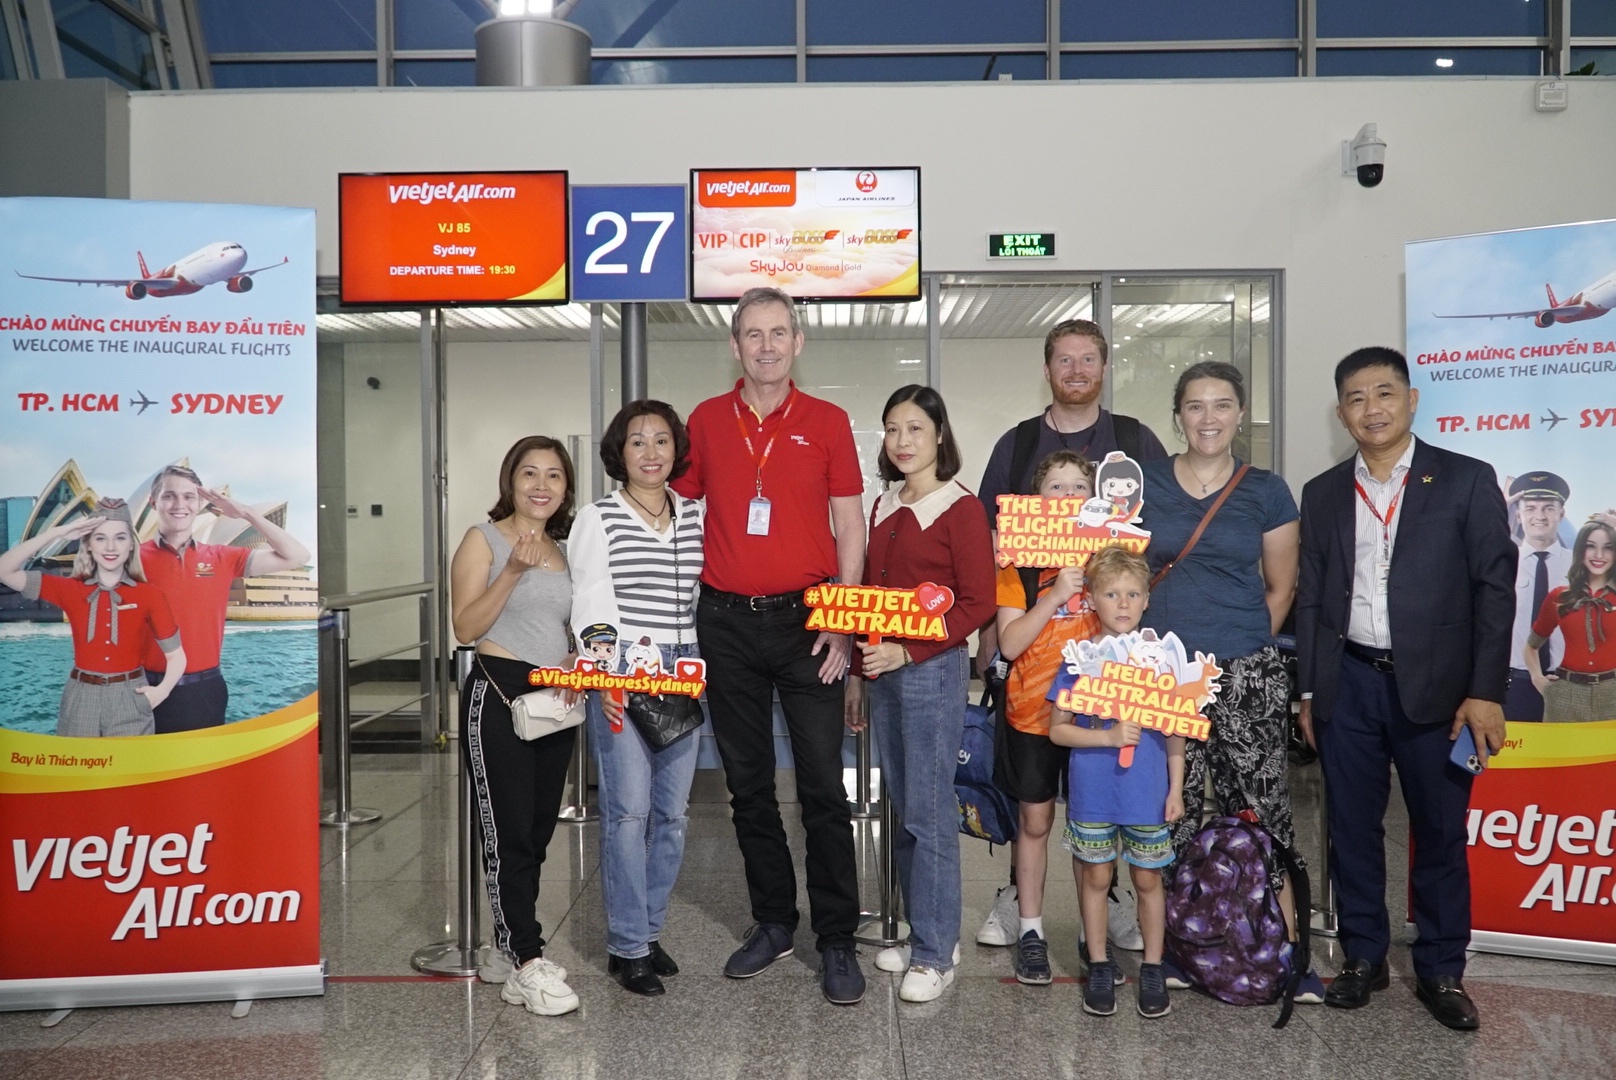 Kinh tế - Từ hôm nay, Vietjet chào đón khách hàng trên các đường bay kết nối Melbourne, Sydney với Việt Nam (Hình 4).